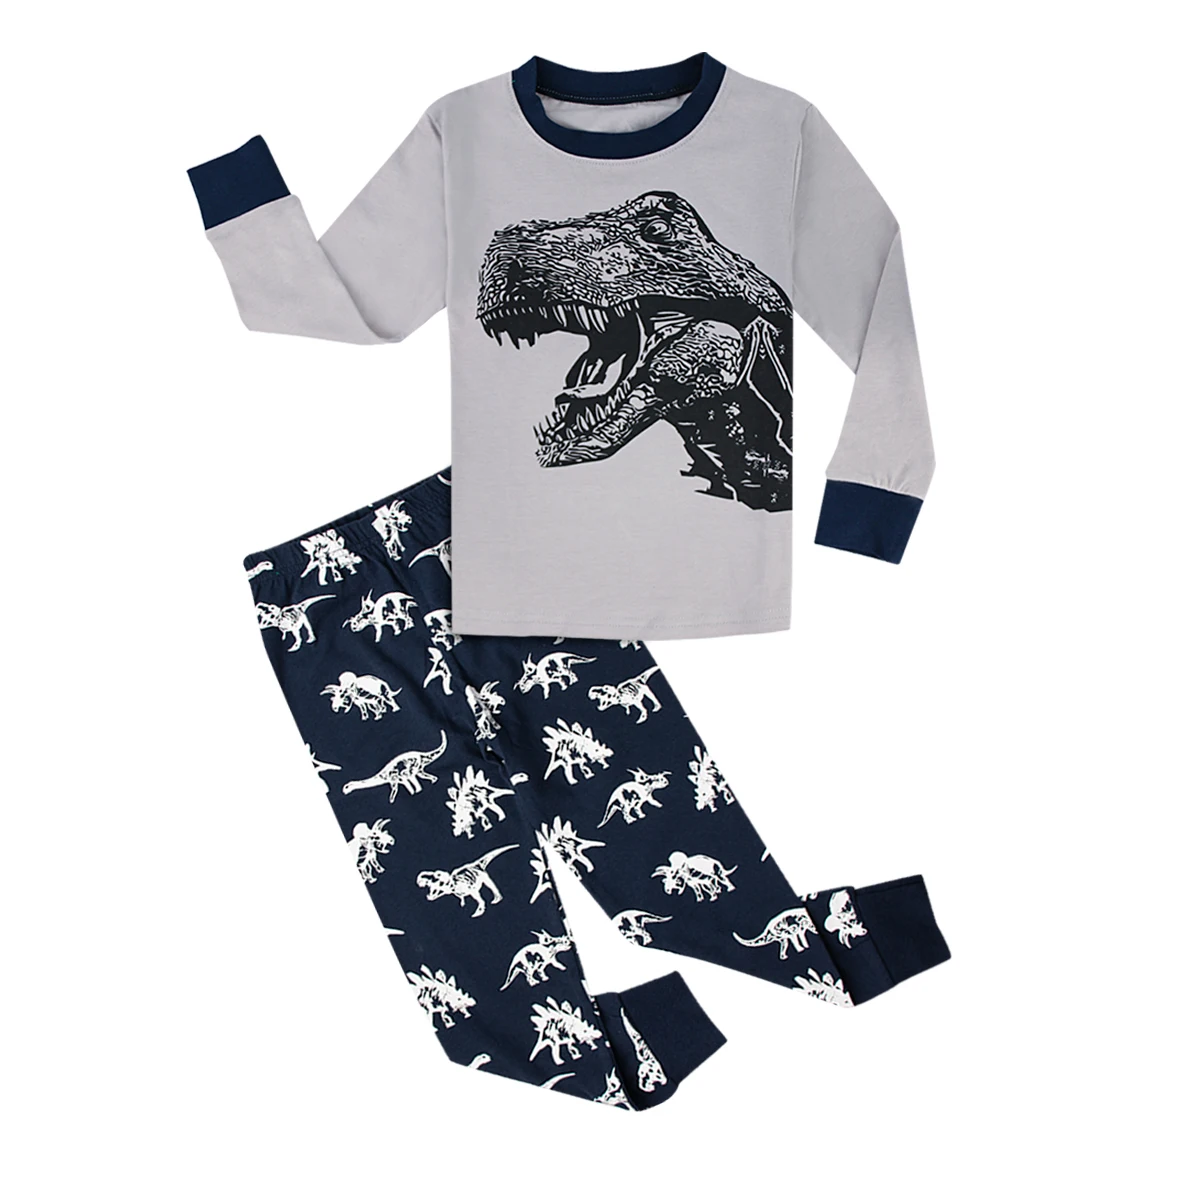 От 8 до 12 лет пижамы ребенок человек-паук детские пижамы Халк Ironman Woddy пижамы супергероя Pijamas infantil пижамы для мальчиков - Цвет: Dinosaur 3